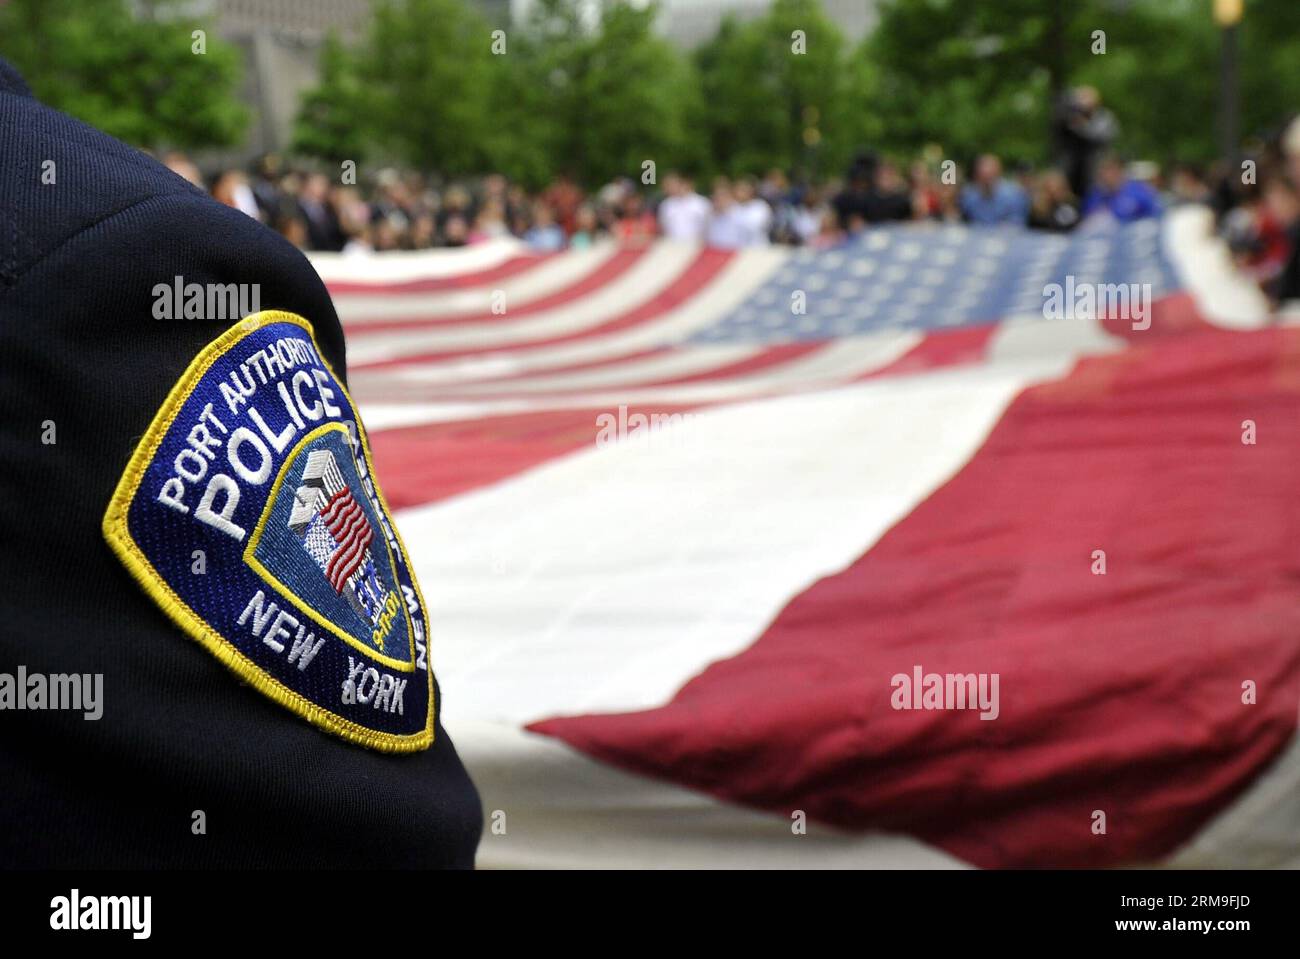 (140521) -- NEW YORK, 21 11 mai 2014 (Xinhua) -- les pompiers, la police et les militaires tiennent le drapeau national 9/11 devant le National September Memorial Museum à New York, États-Unis, le 21 mai 2014. Le musée commémoratif a ouvert ses portes au grand public mercredi après un transfert cérémoniel du drapeau national 9/11, un drapeau américain qui avait flotté au 90 West Street, adjacent à Ground Zero, pendant des semaines après les attaques, dans la collection permanente du musée. (Xinhua/Wang Lei) US-NEW YORK-SEPT. 11 MEMORIAL MUSEUM-OUVERTURE AU PUBLIC PUBLICATIONxNOTxINxCHN New York mai 21 Banque D'Images